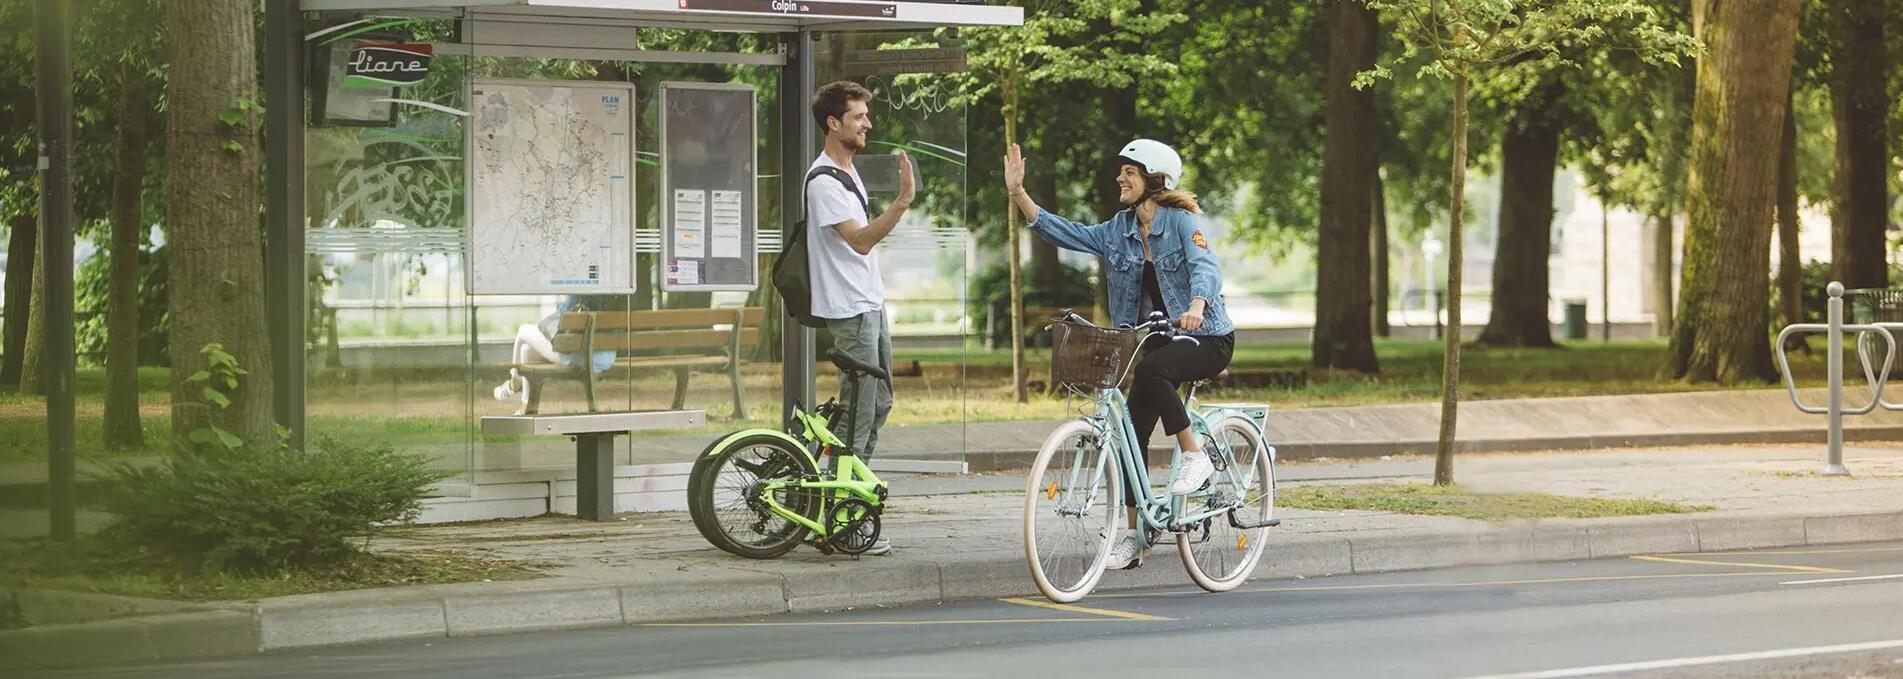 Una donna saluta un ciclista che le passa di fianco.